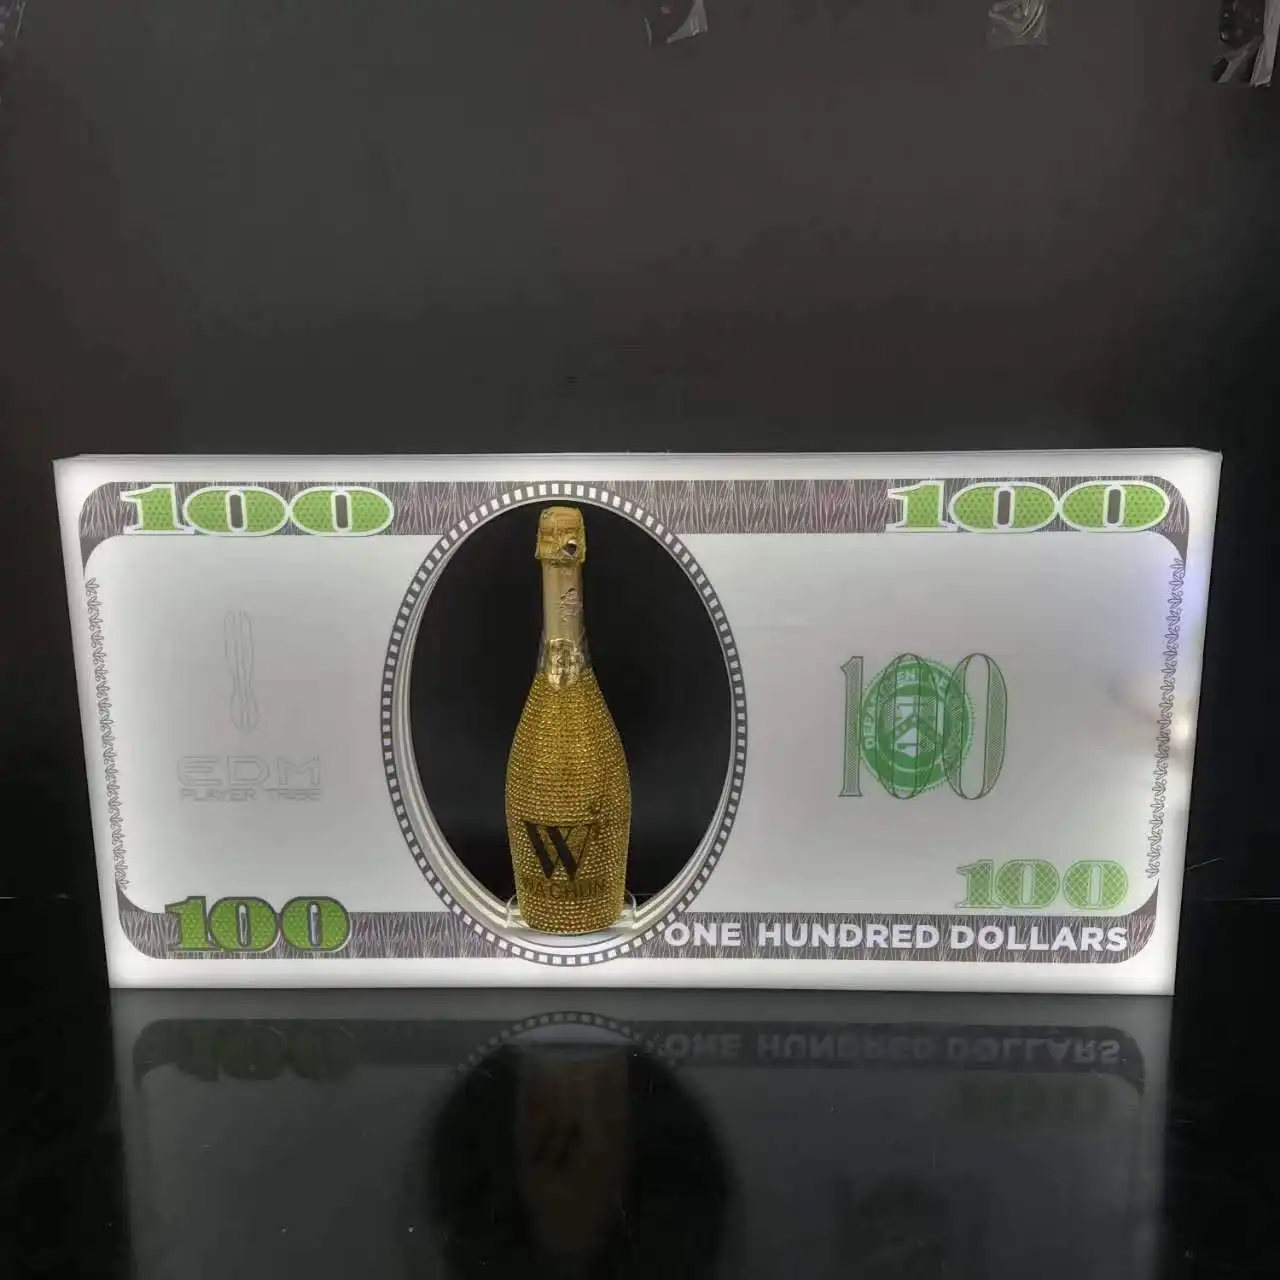 Discothèque signe affichage lueur US 100 dollar bill acrylique présentateur glorifier bouteille affichage discothèque vip signe